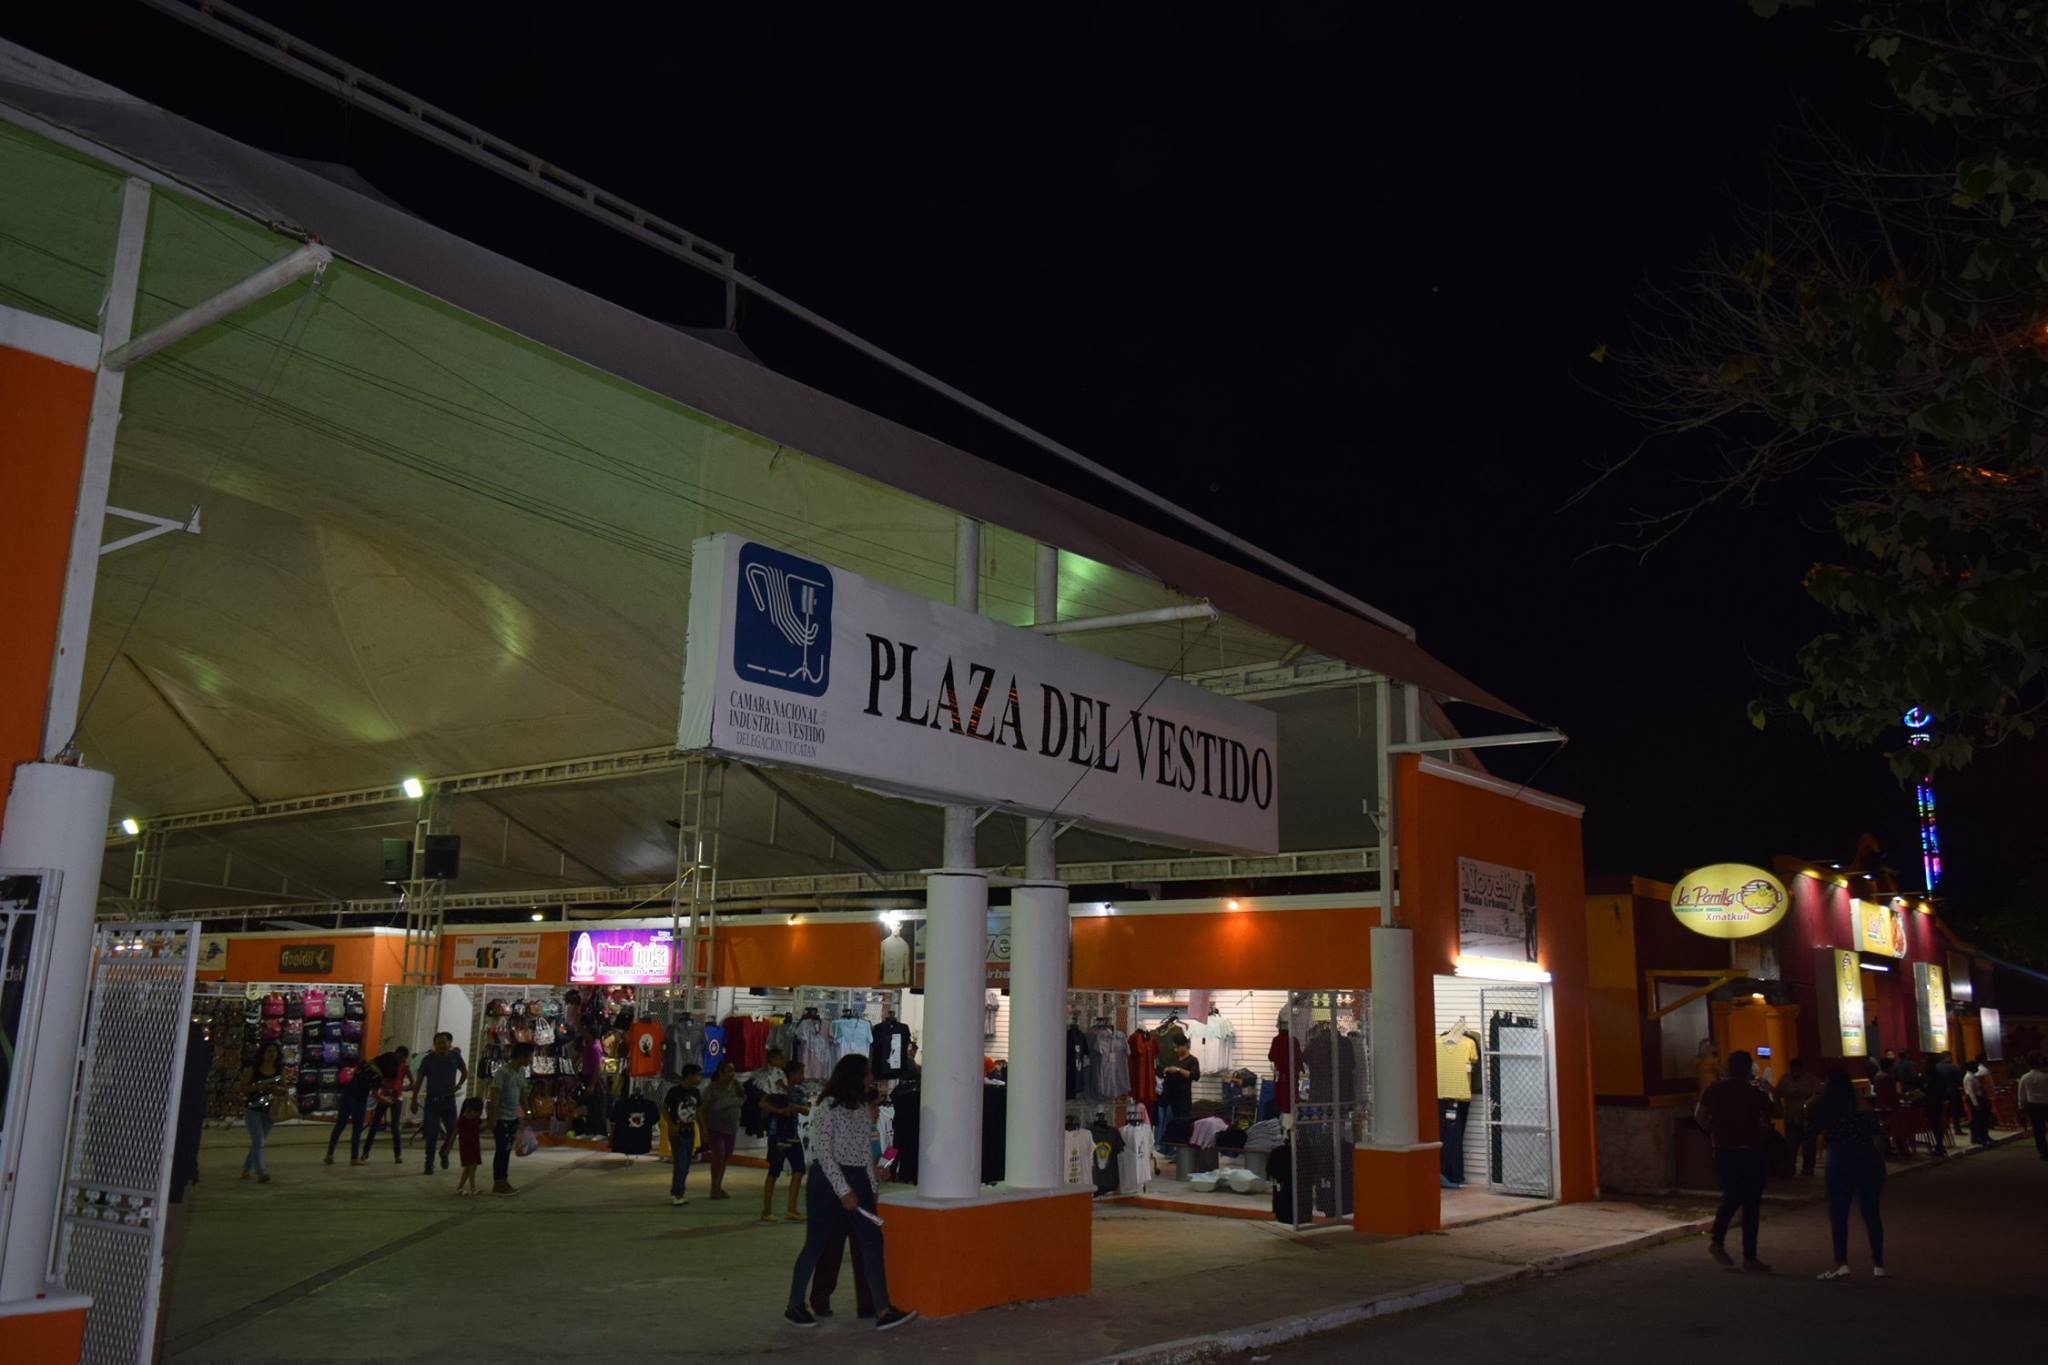 CANAIVE - DELEGACIÓN YUCATÁN - Inauguración Plaza del Vestido